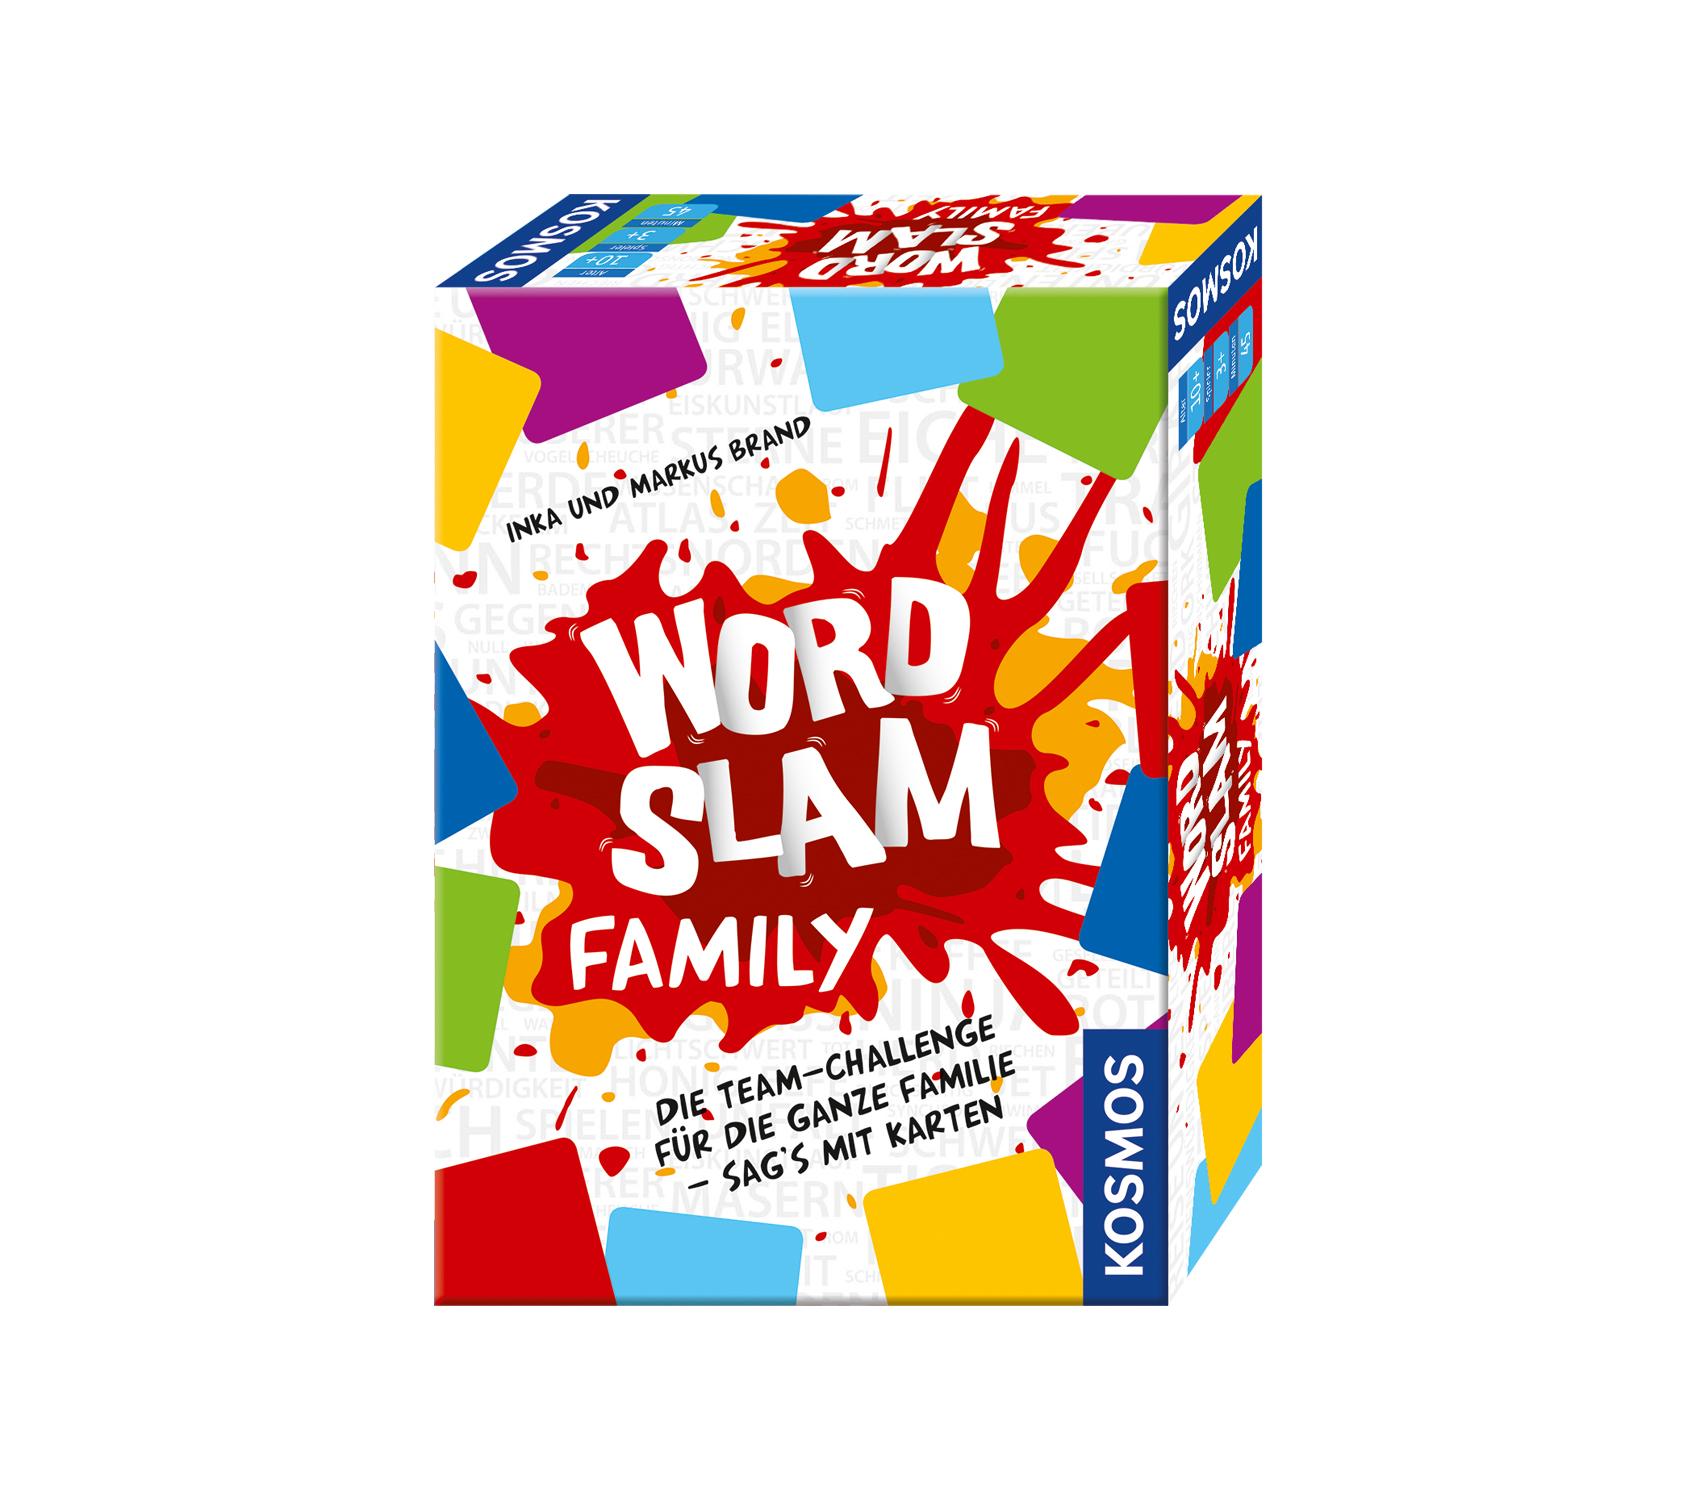 Word Slam - Family